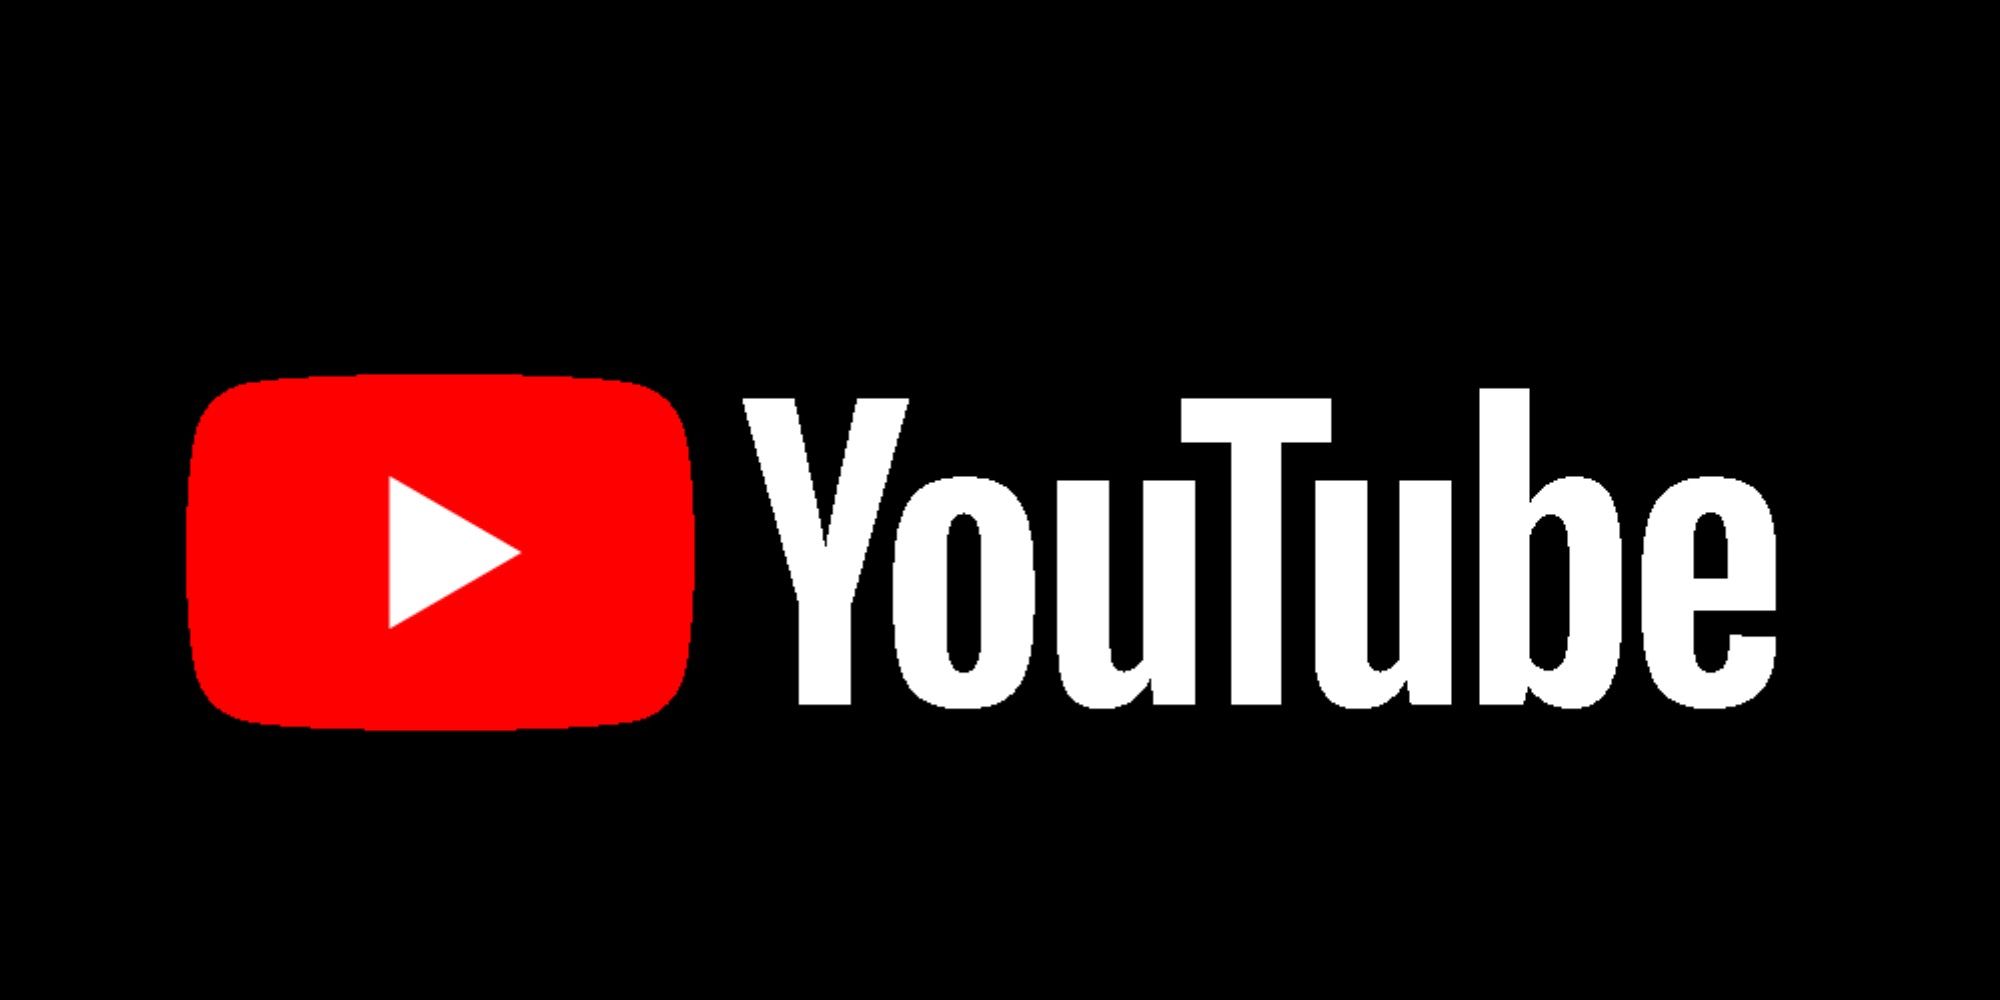 Image of Youtube logo